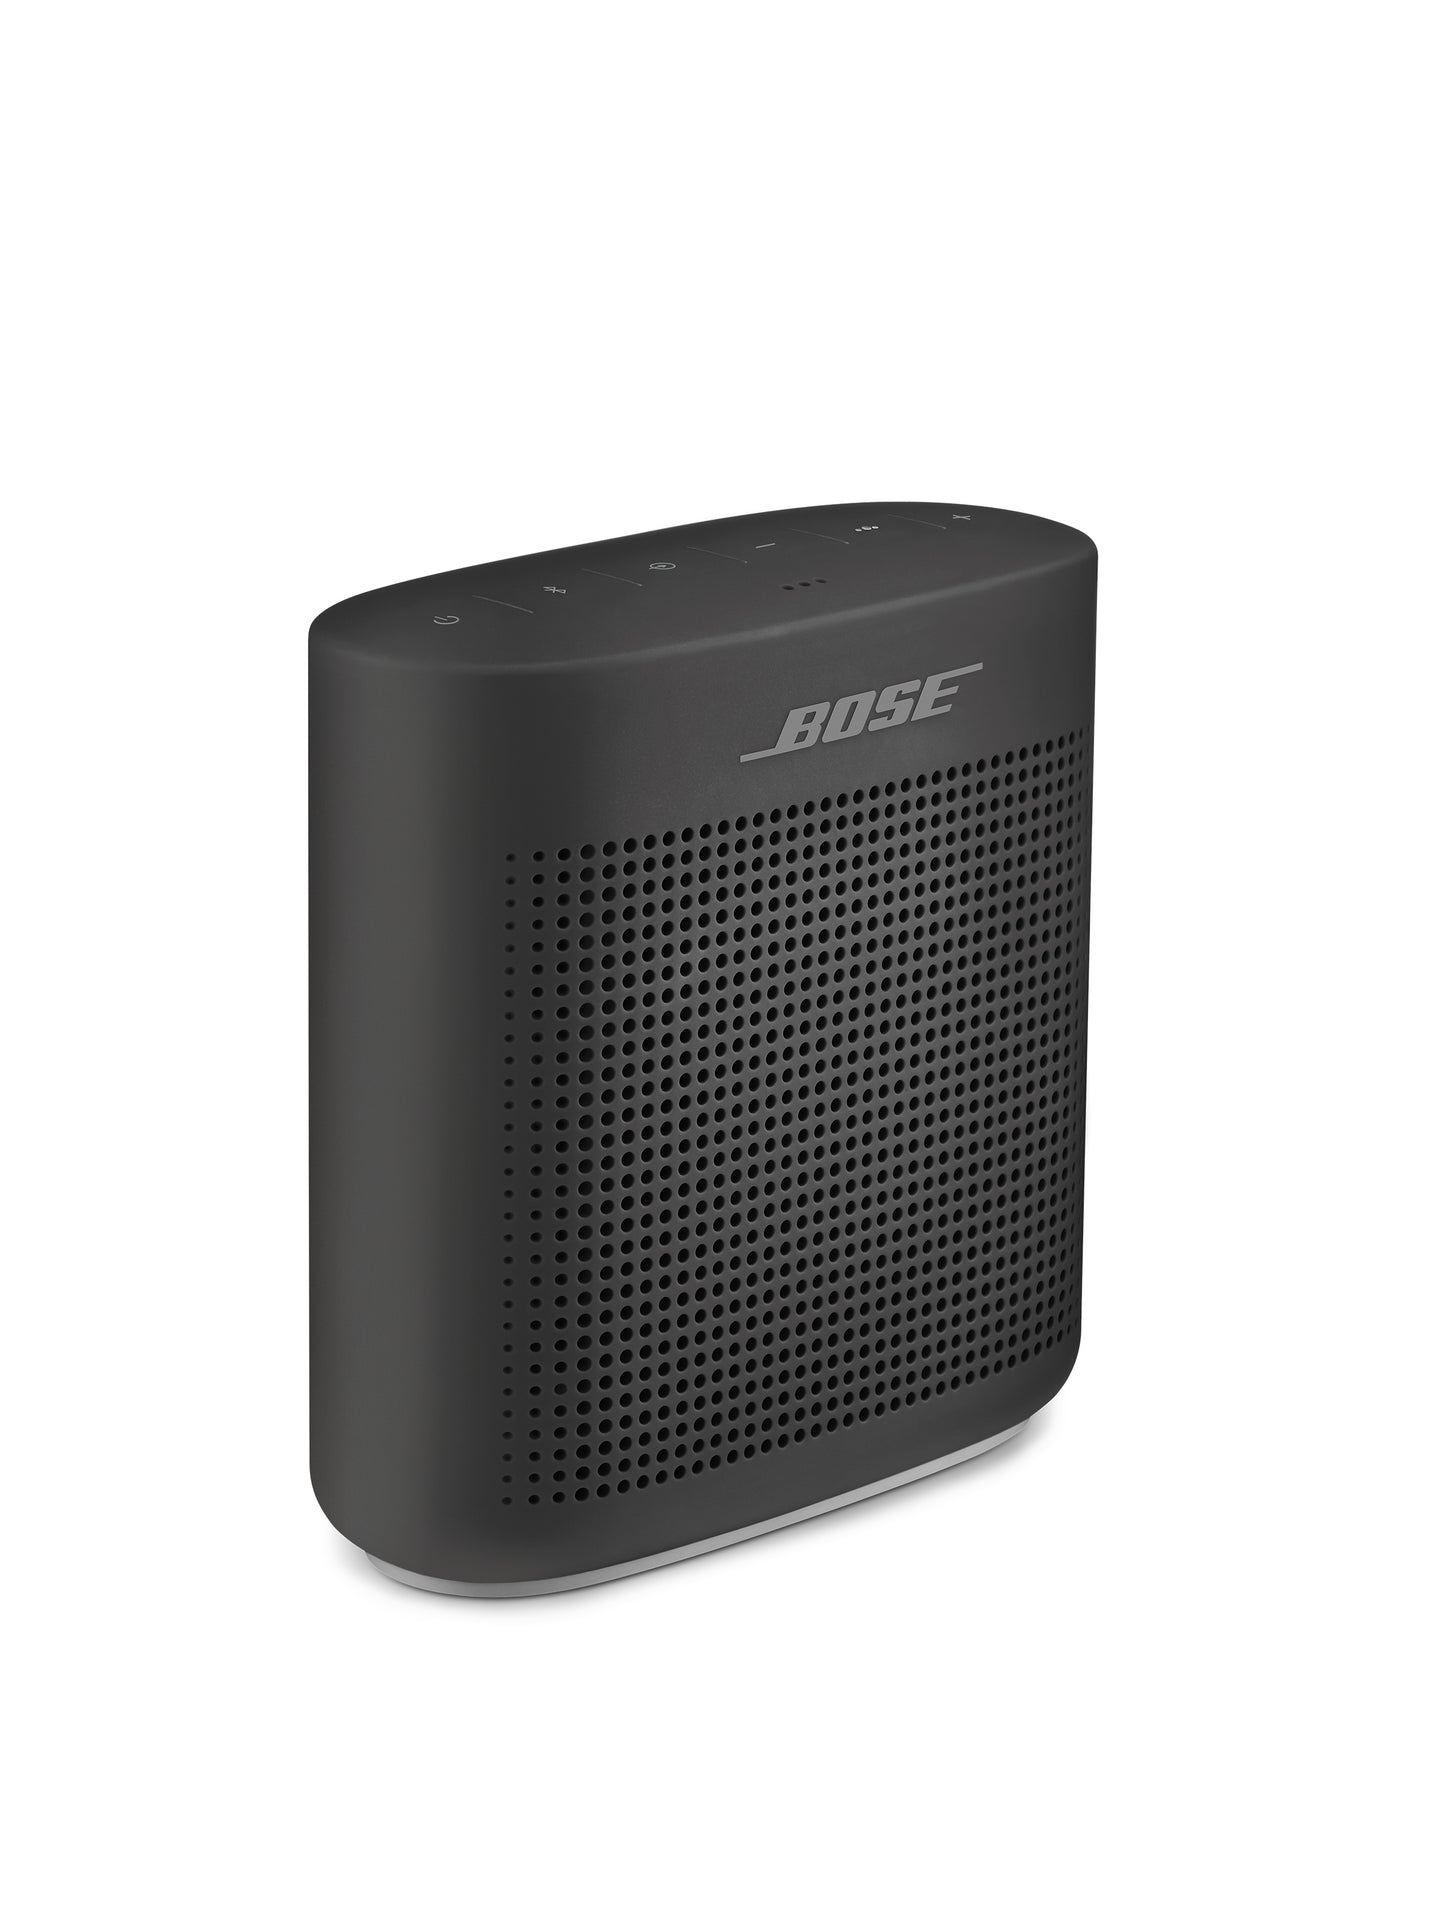 Bose SoundLink Color Portable Bluetooth Speaker II - Black